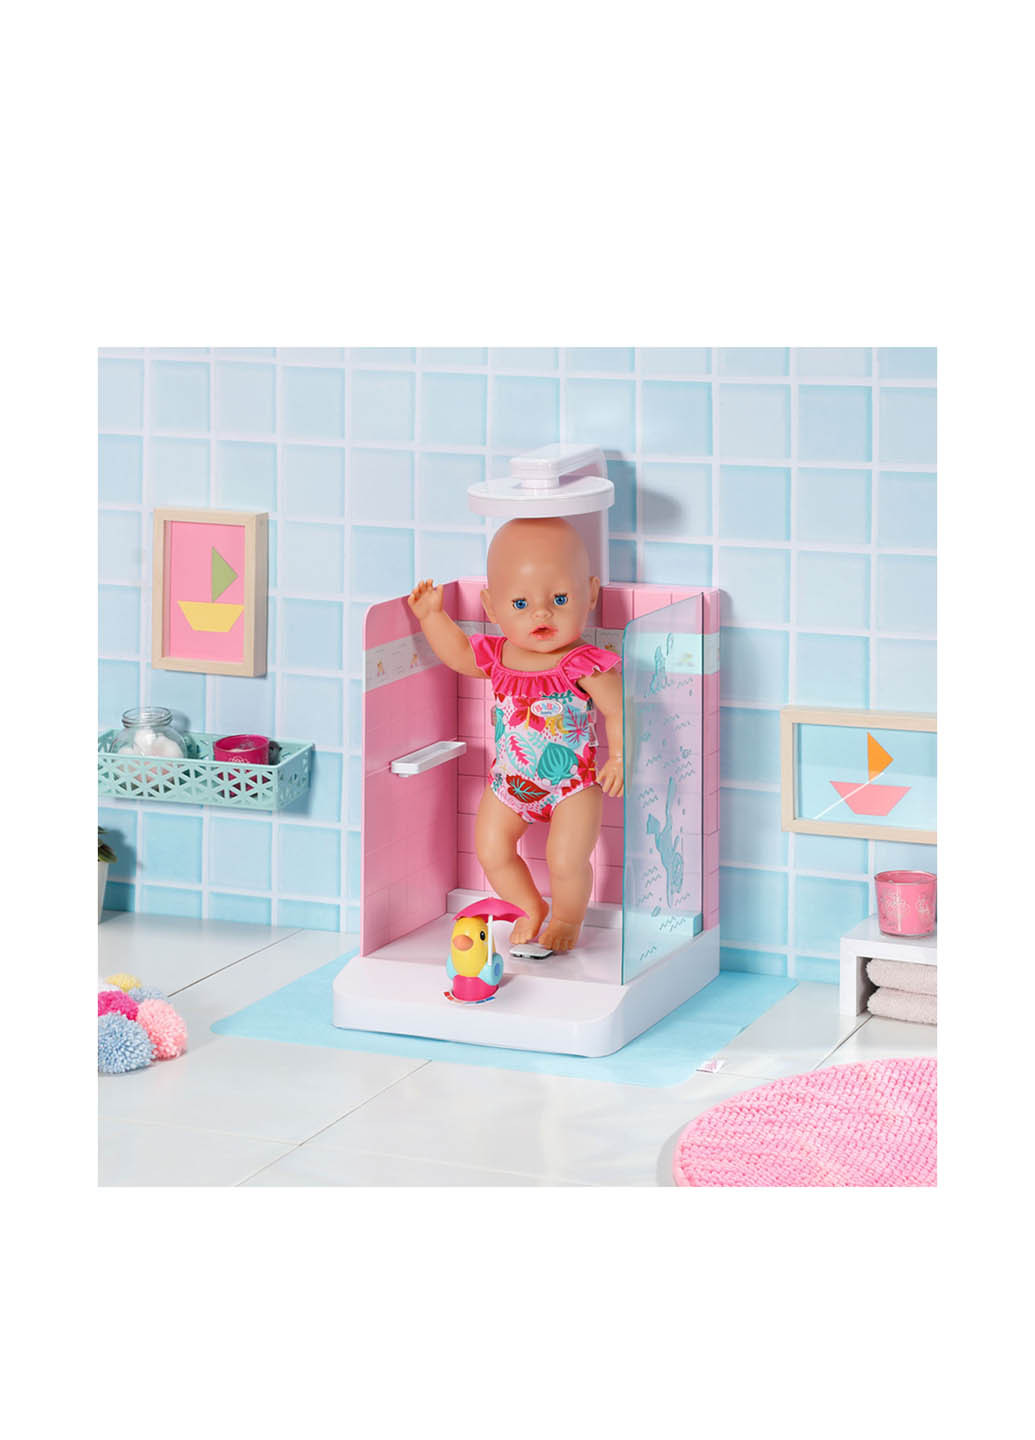 Душевая кабинка для куклы Купаемся с уточкой, 25x20x39 см BABY born (253483814)